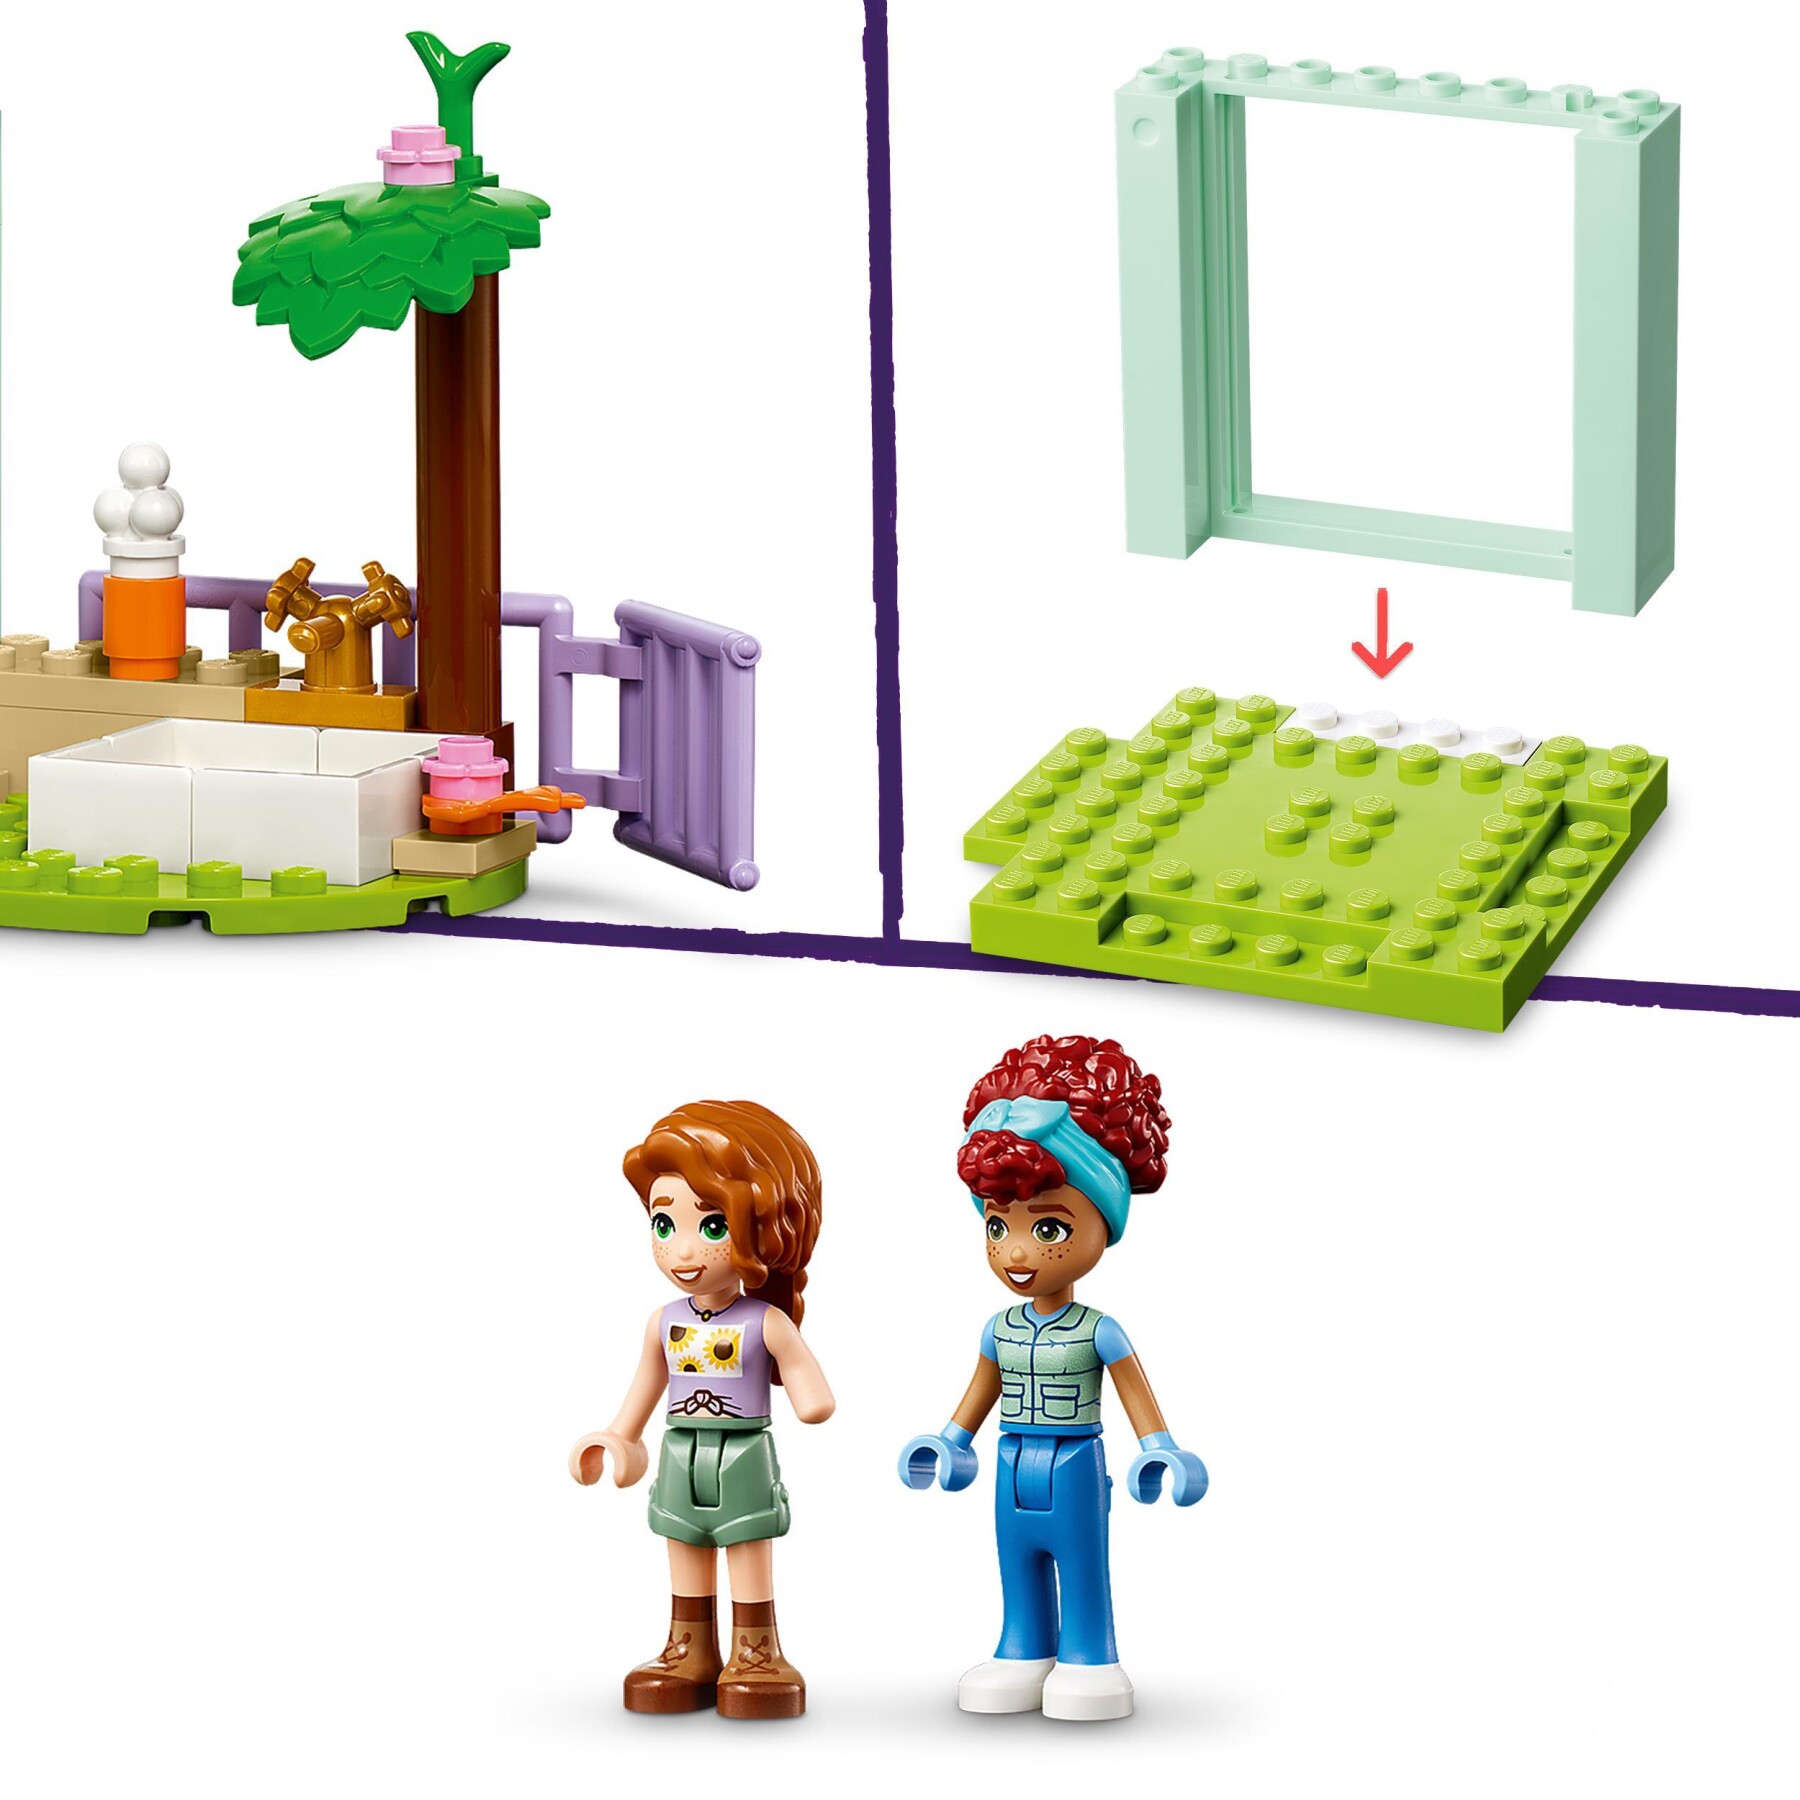 Lego friends 42632 la clinica veterinaria degli animali della fattoria, giochi bambini 4+ con personaggi e trattore giocattolo - LEGO FRIENDS